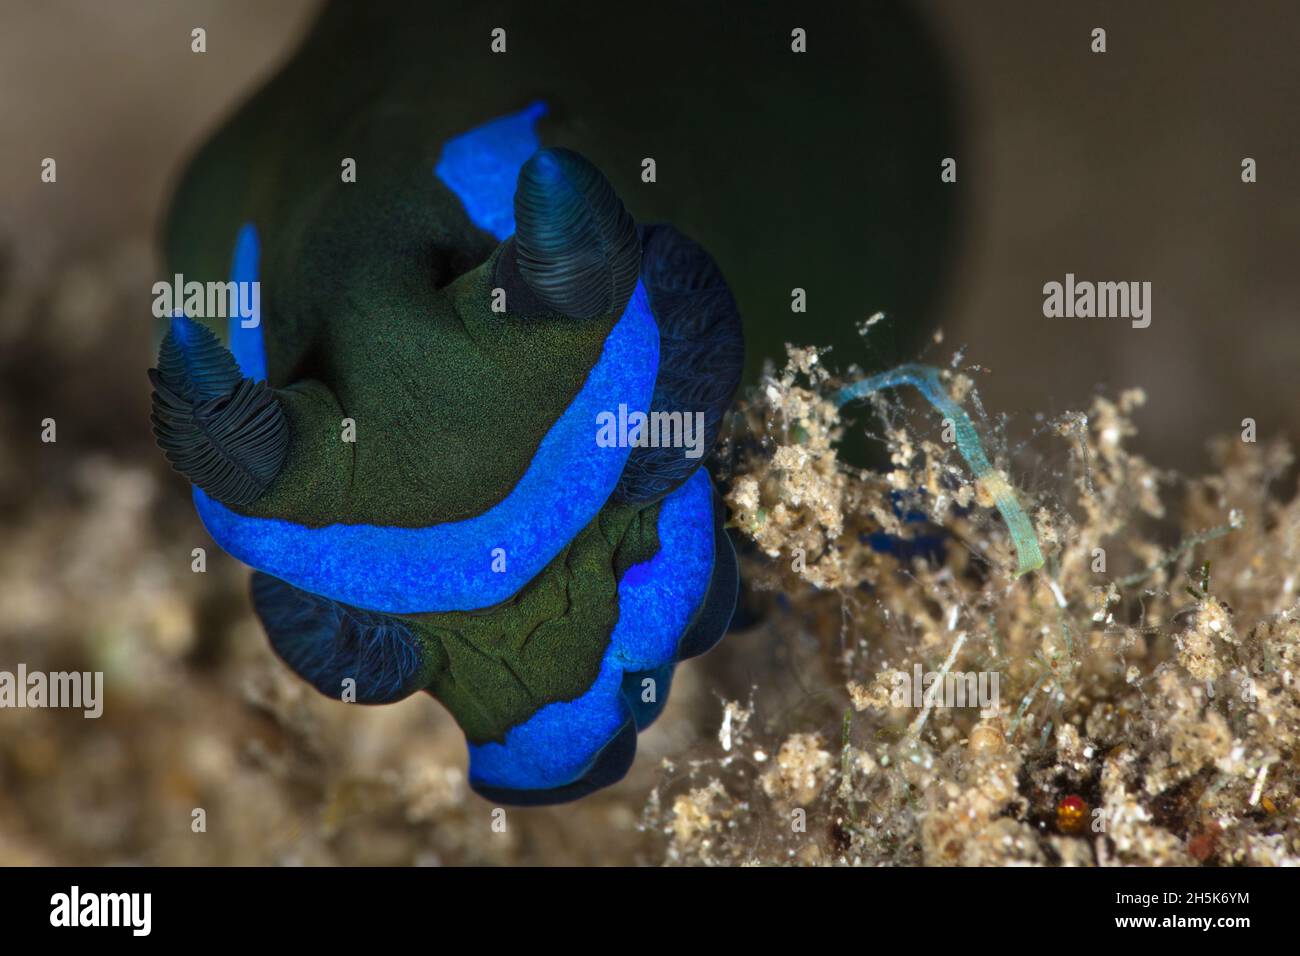 Nahaufnahme, Vorderansicht eines düsteren Nudibranch (Tambja morosa) mit seinen Rhinophoren und hellblauen Bändern, Maui; Hawaii, Vereinigte Staaten von Amerika Stockfoto